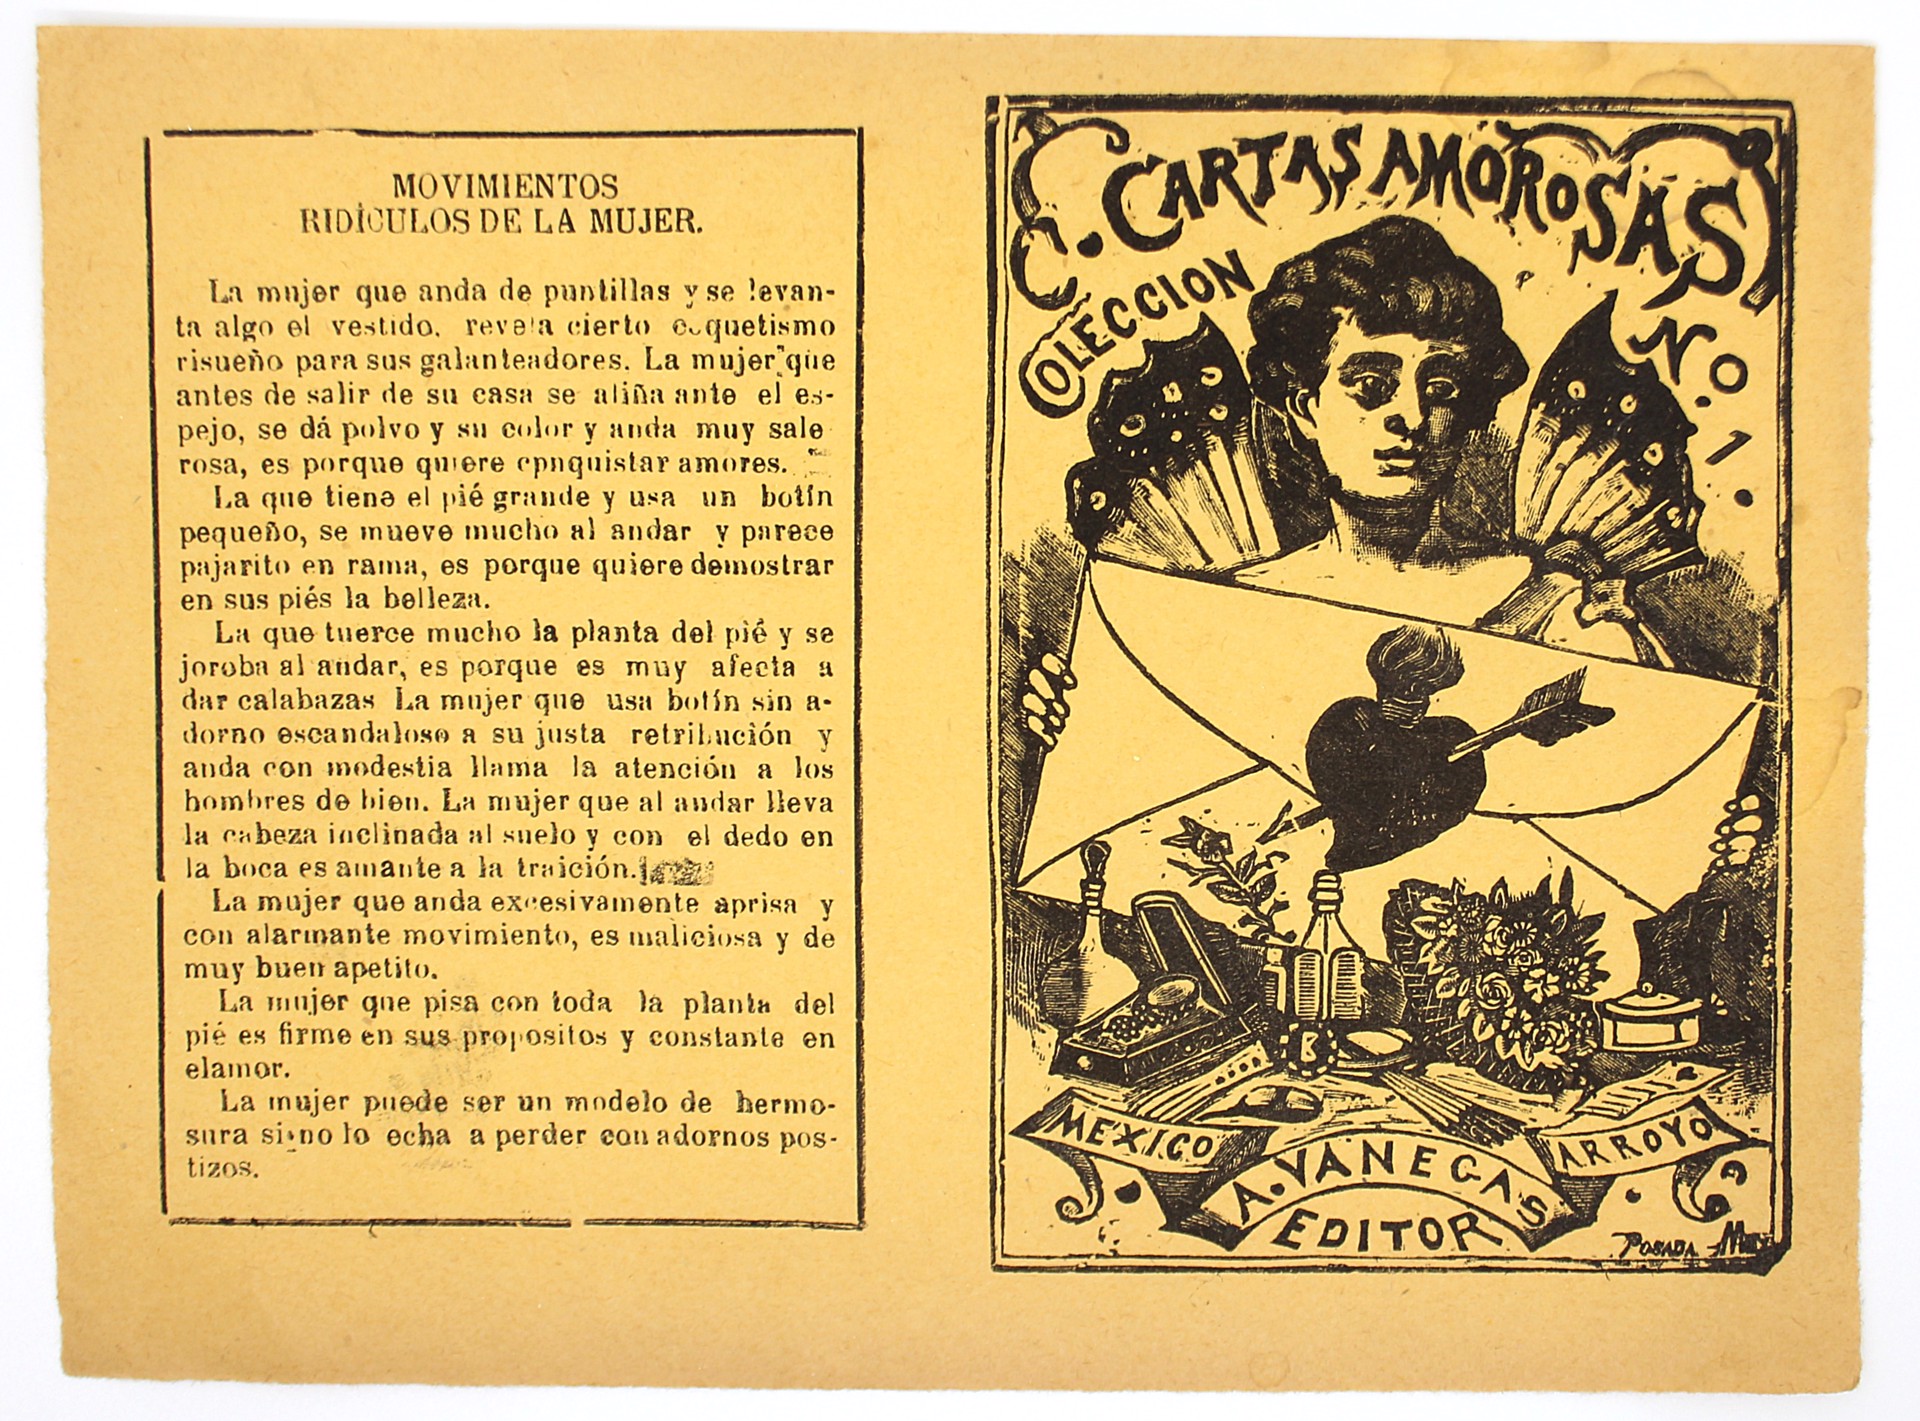 Colección de Cartas Amorosas #1 by José Guadalupe Posada